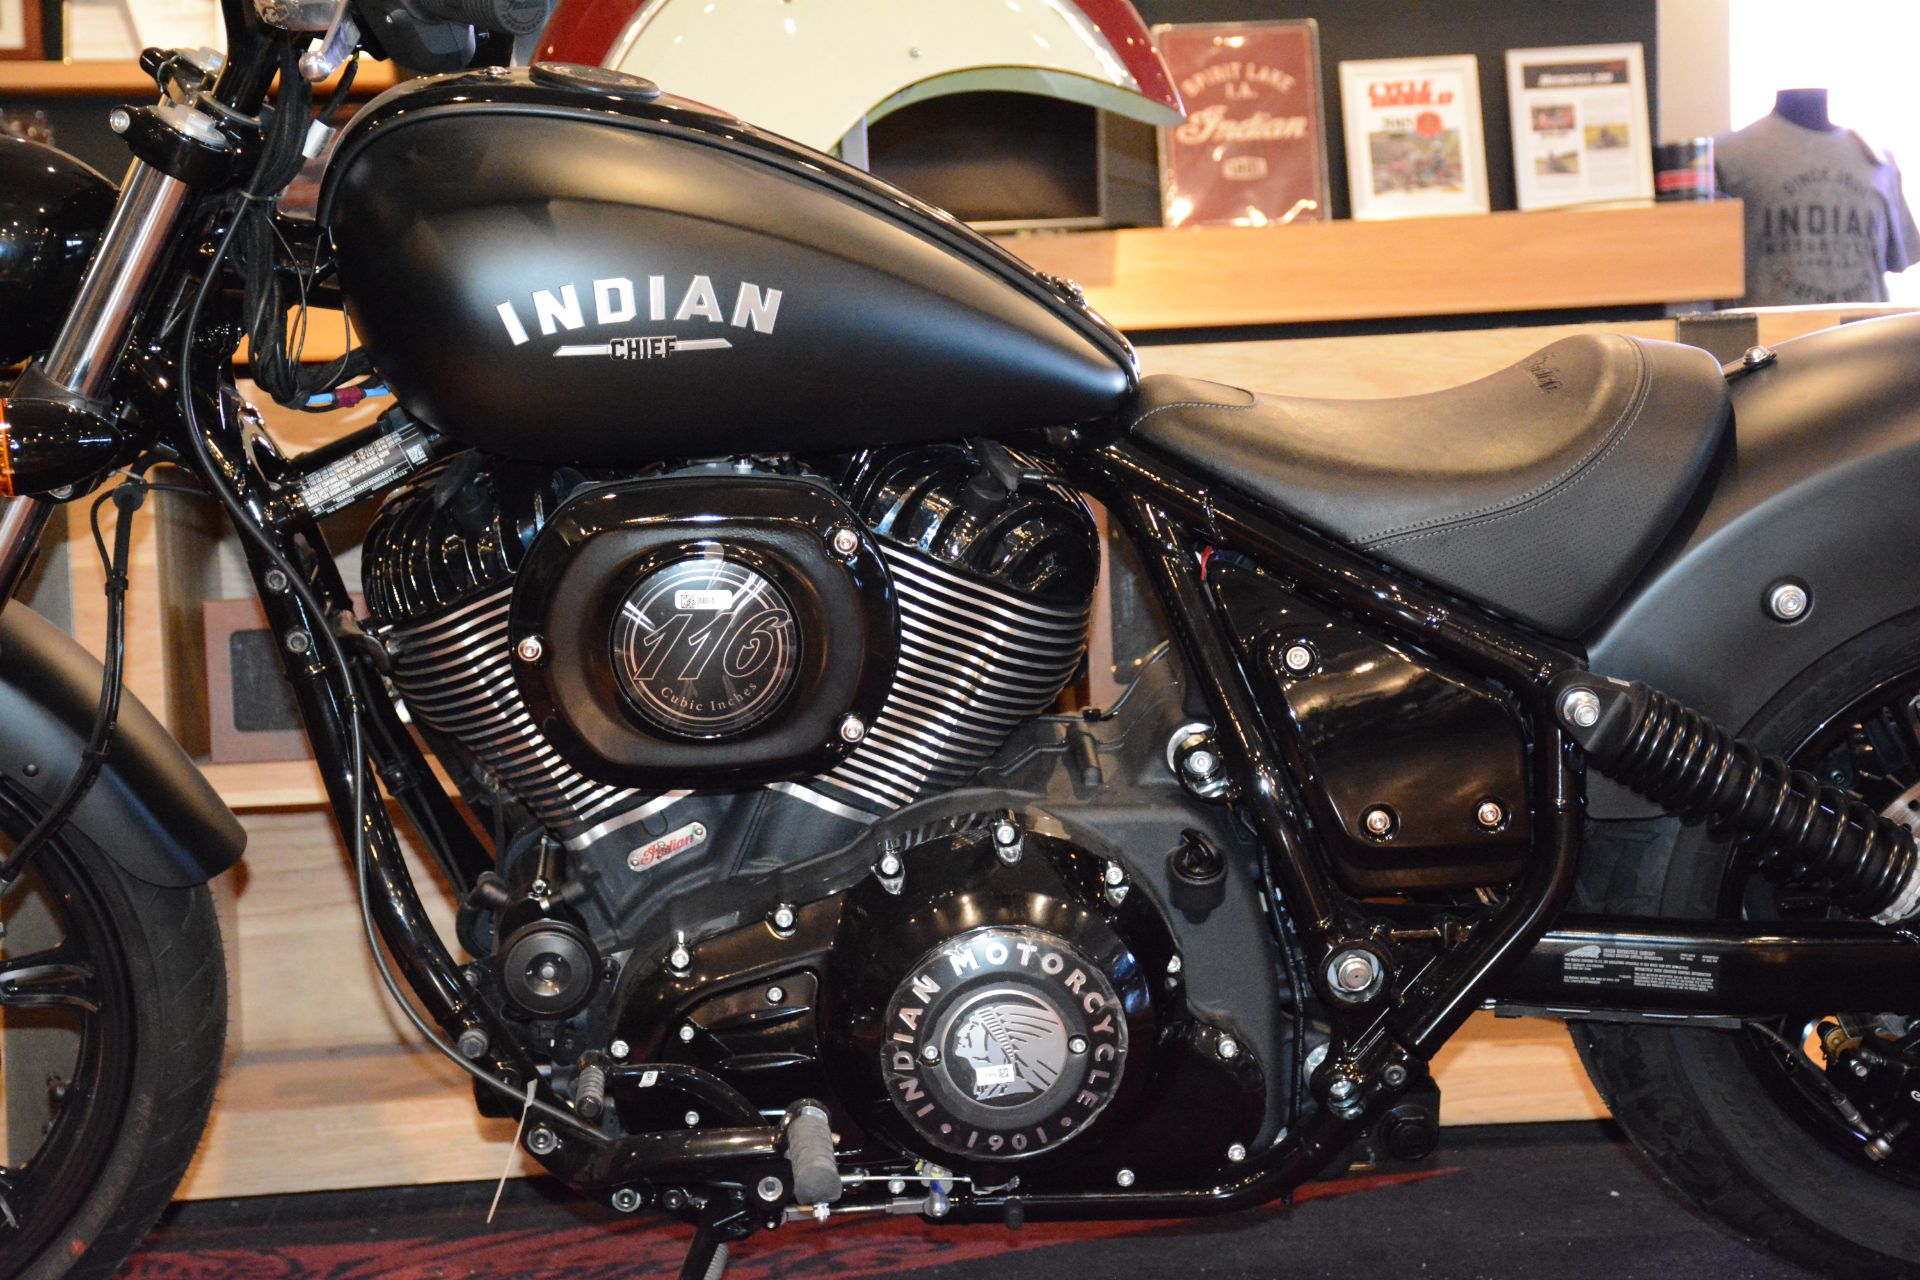 2022 Indian Motorcycle Chief Dark Horse® in El Paso, Texas - Photo 6